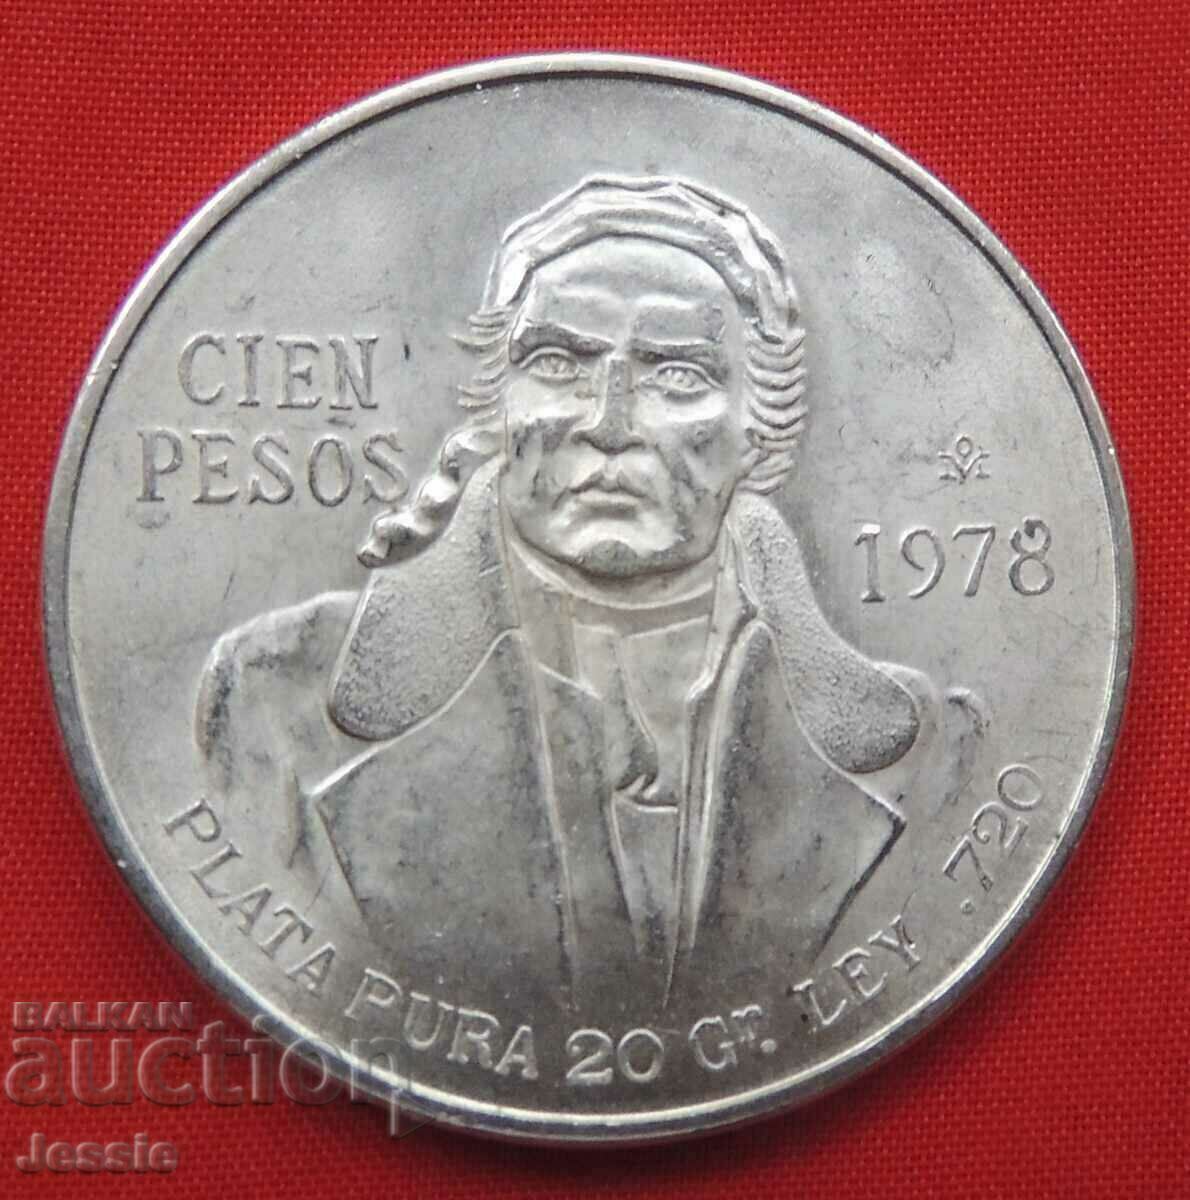 100 Cien Pesos 1978 Mexic